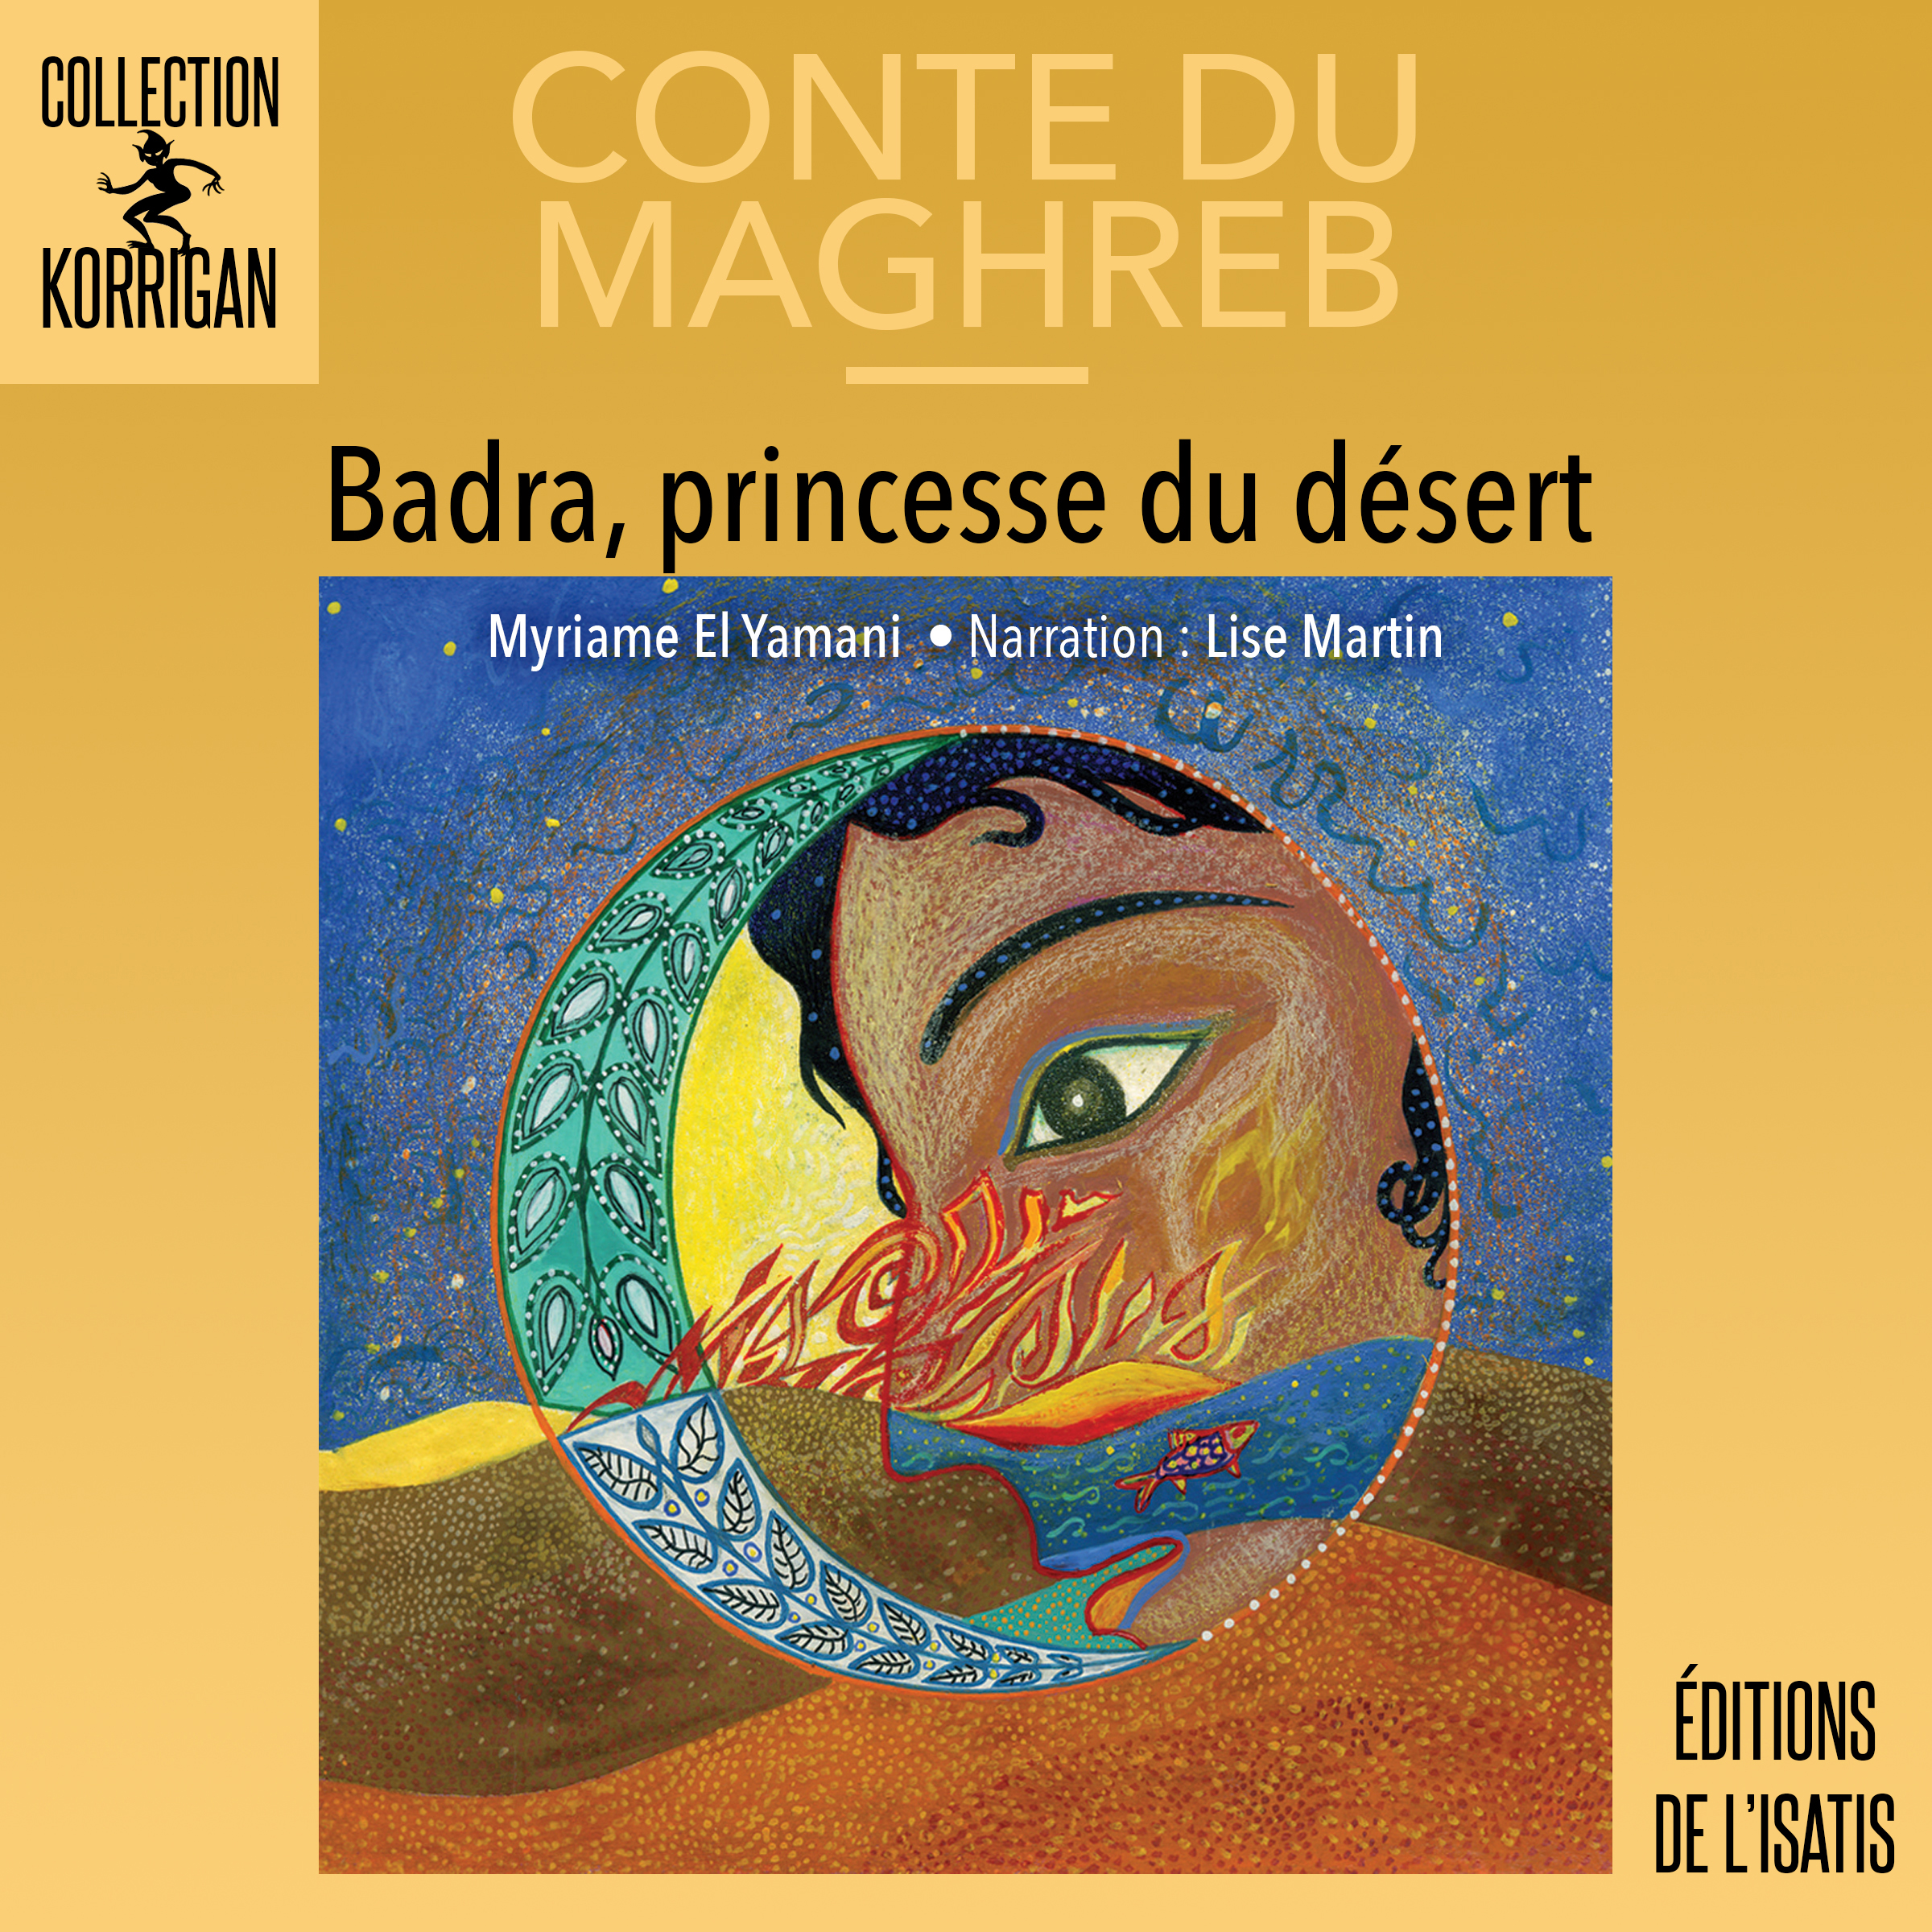 Badra, la princesse du désert - Éditions de l'Isatis